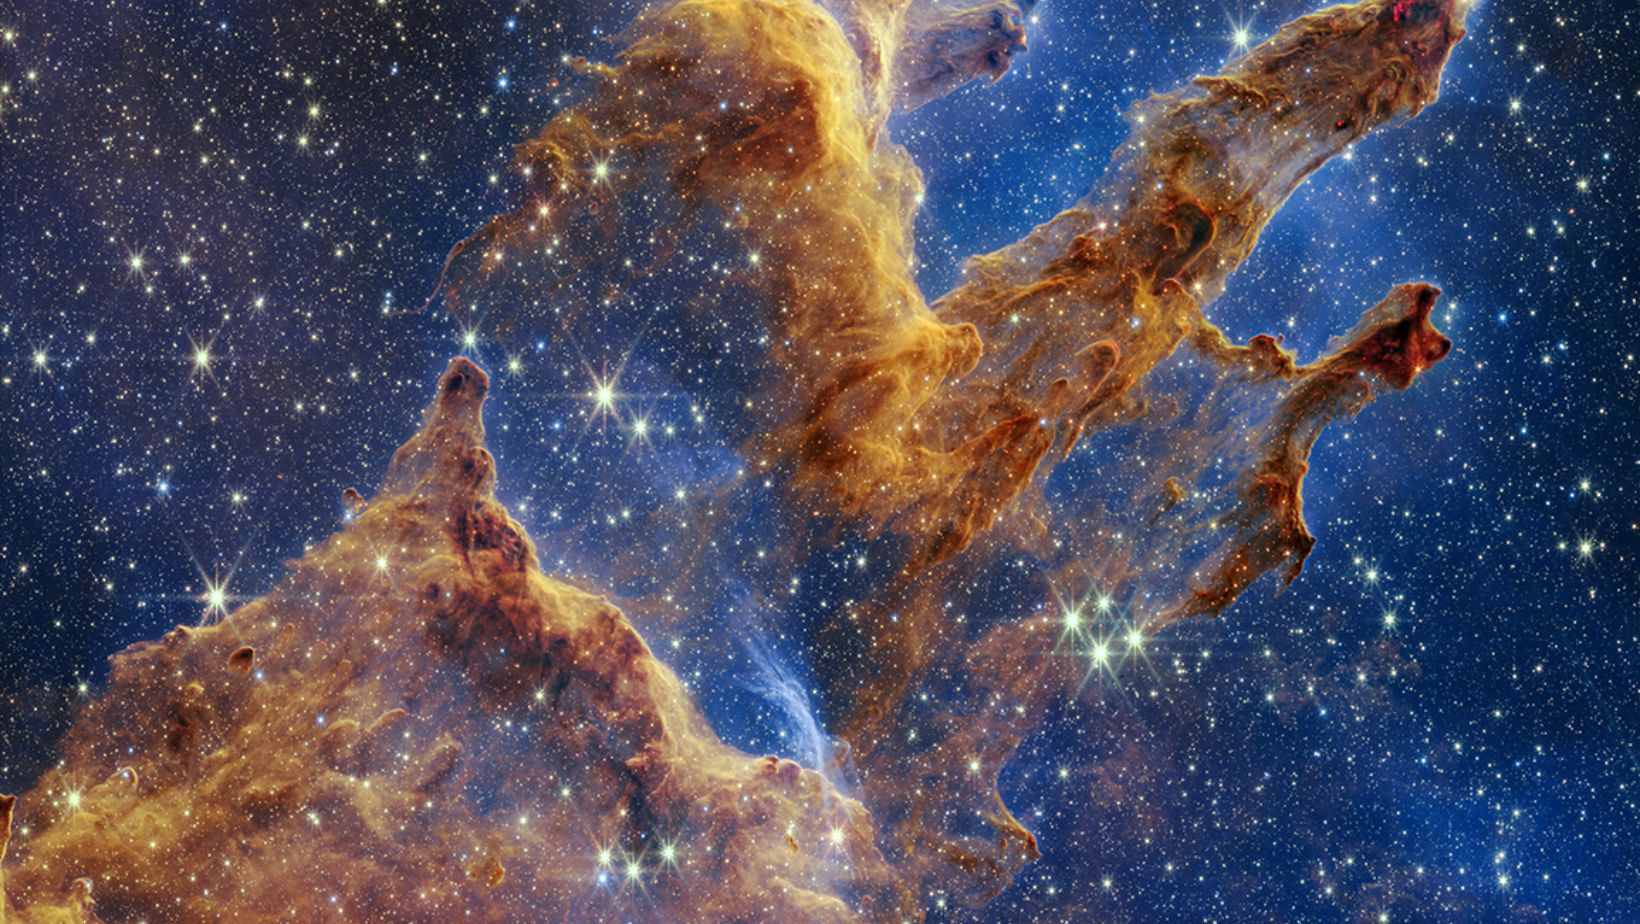 Download JWST Wallpapers 4K Pillars of Creation and Tarantula Nebula